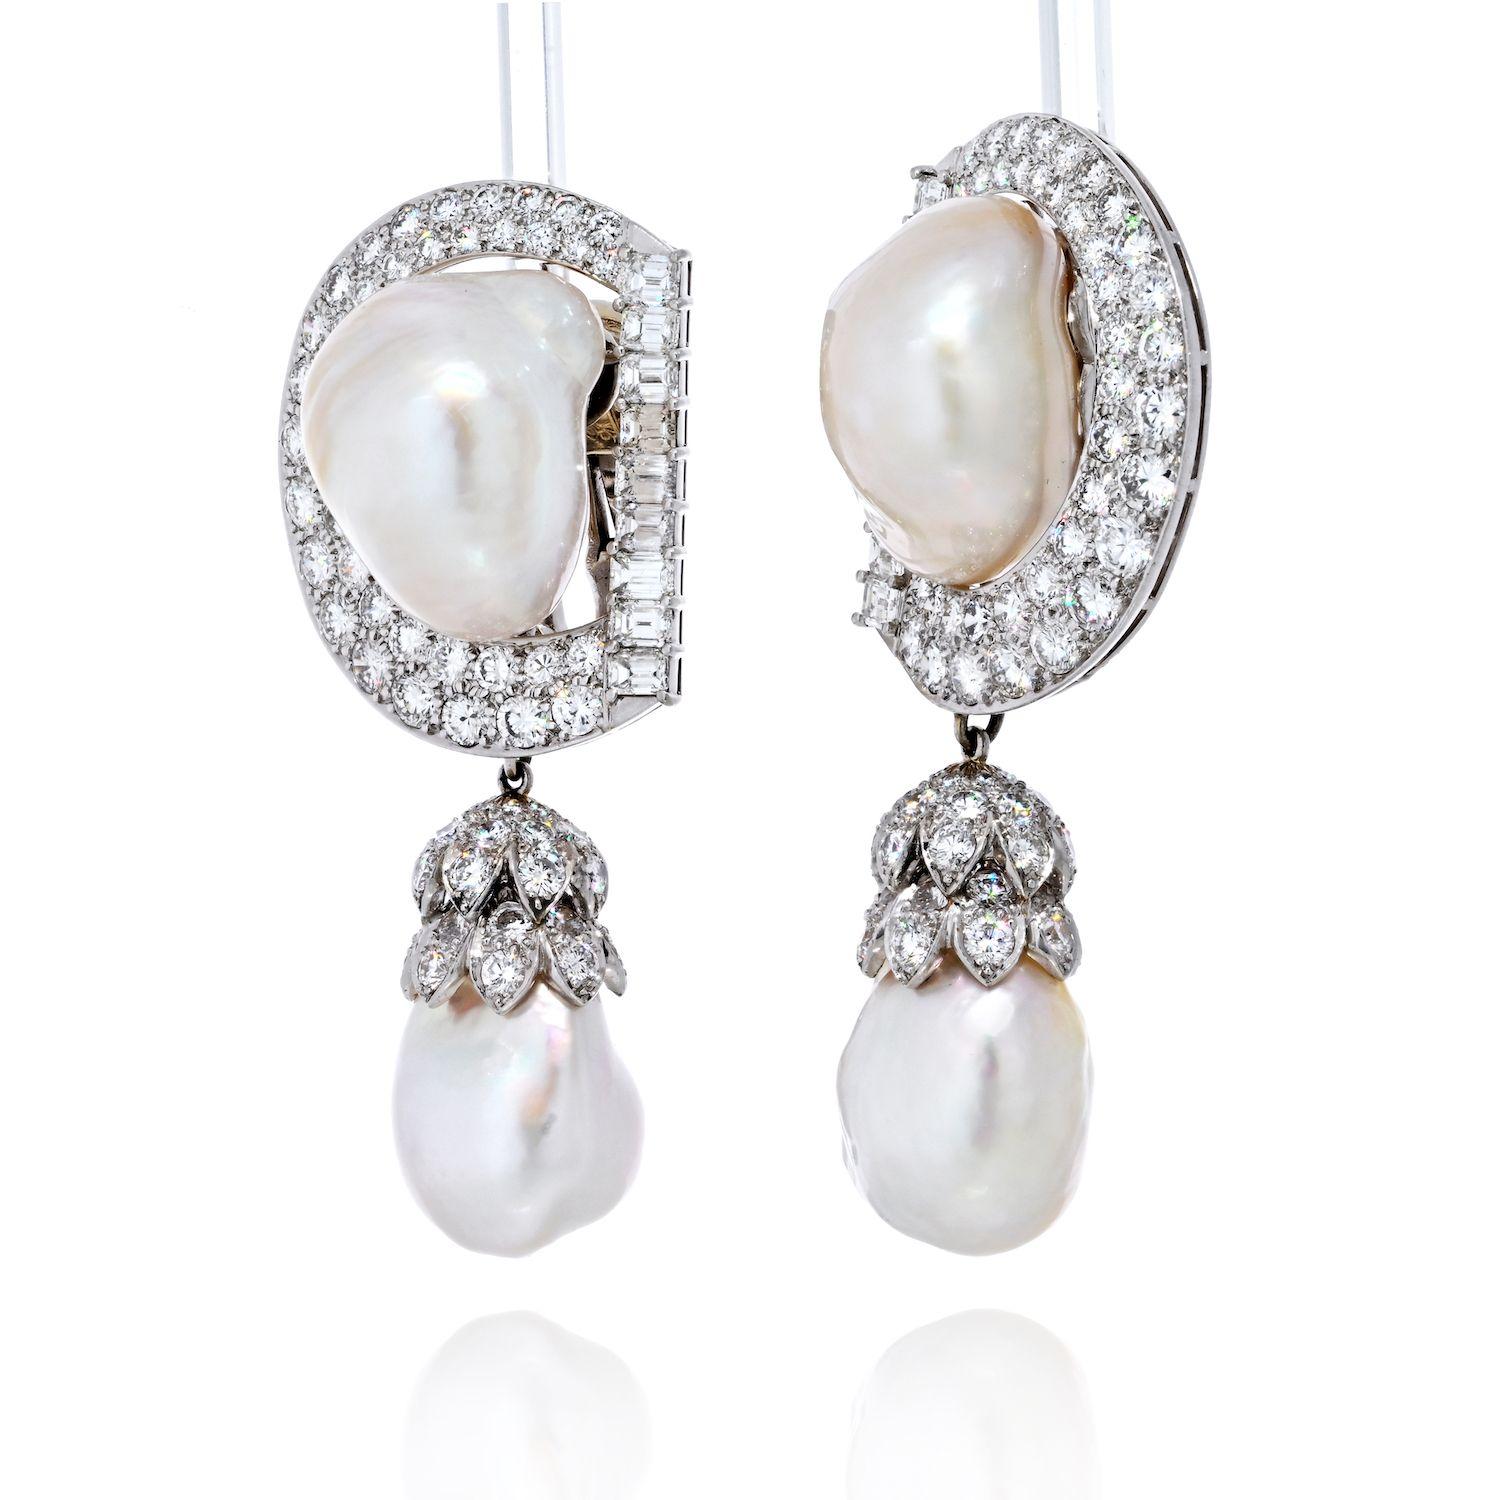 Les boucles d'oreilles goutte d'eau en perles baroques et diamants de David Webb, en platine, illustrent la maîtrise du designer dans la création de pièces uniques et à couper le souffle. Cette exquise paire de boucles d'oreilles allie